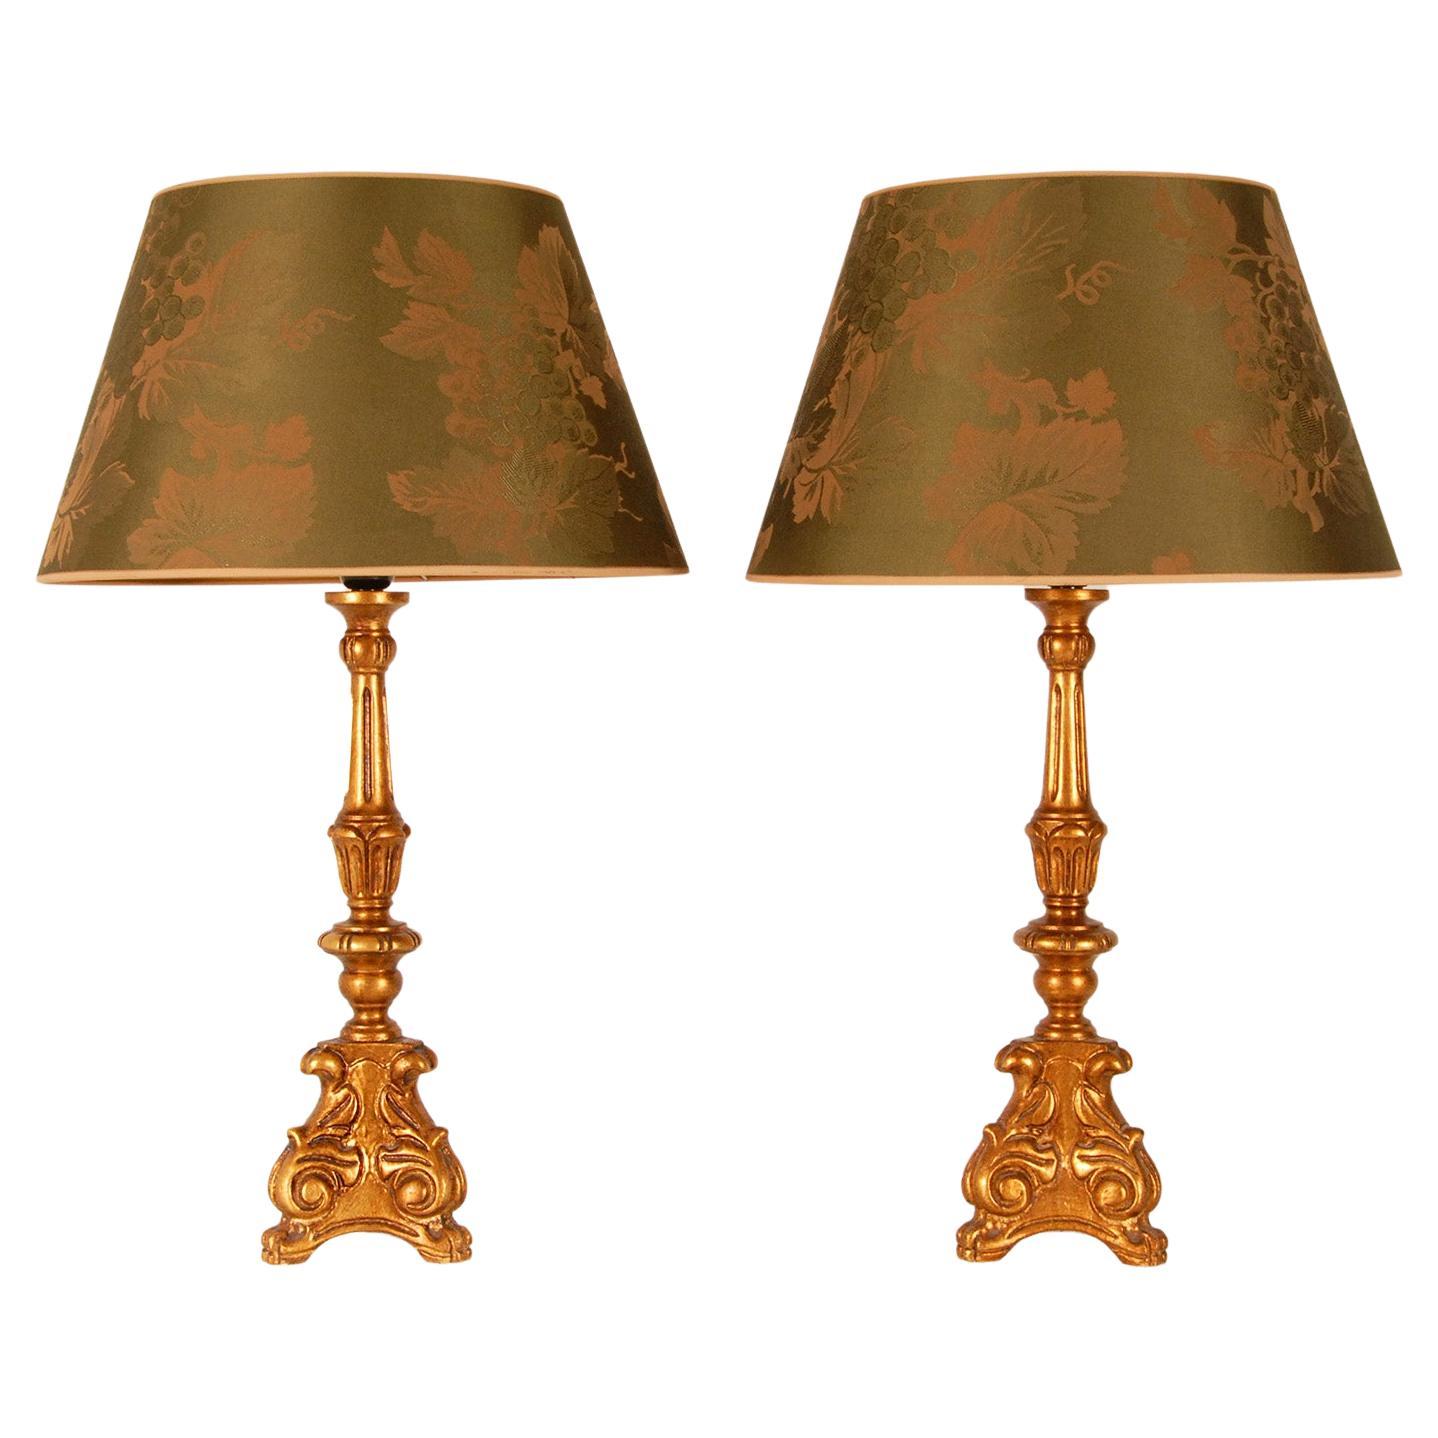 Paire de lampes de table baroques en bois doré et vert, style campagne française vintage